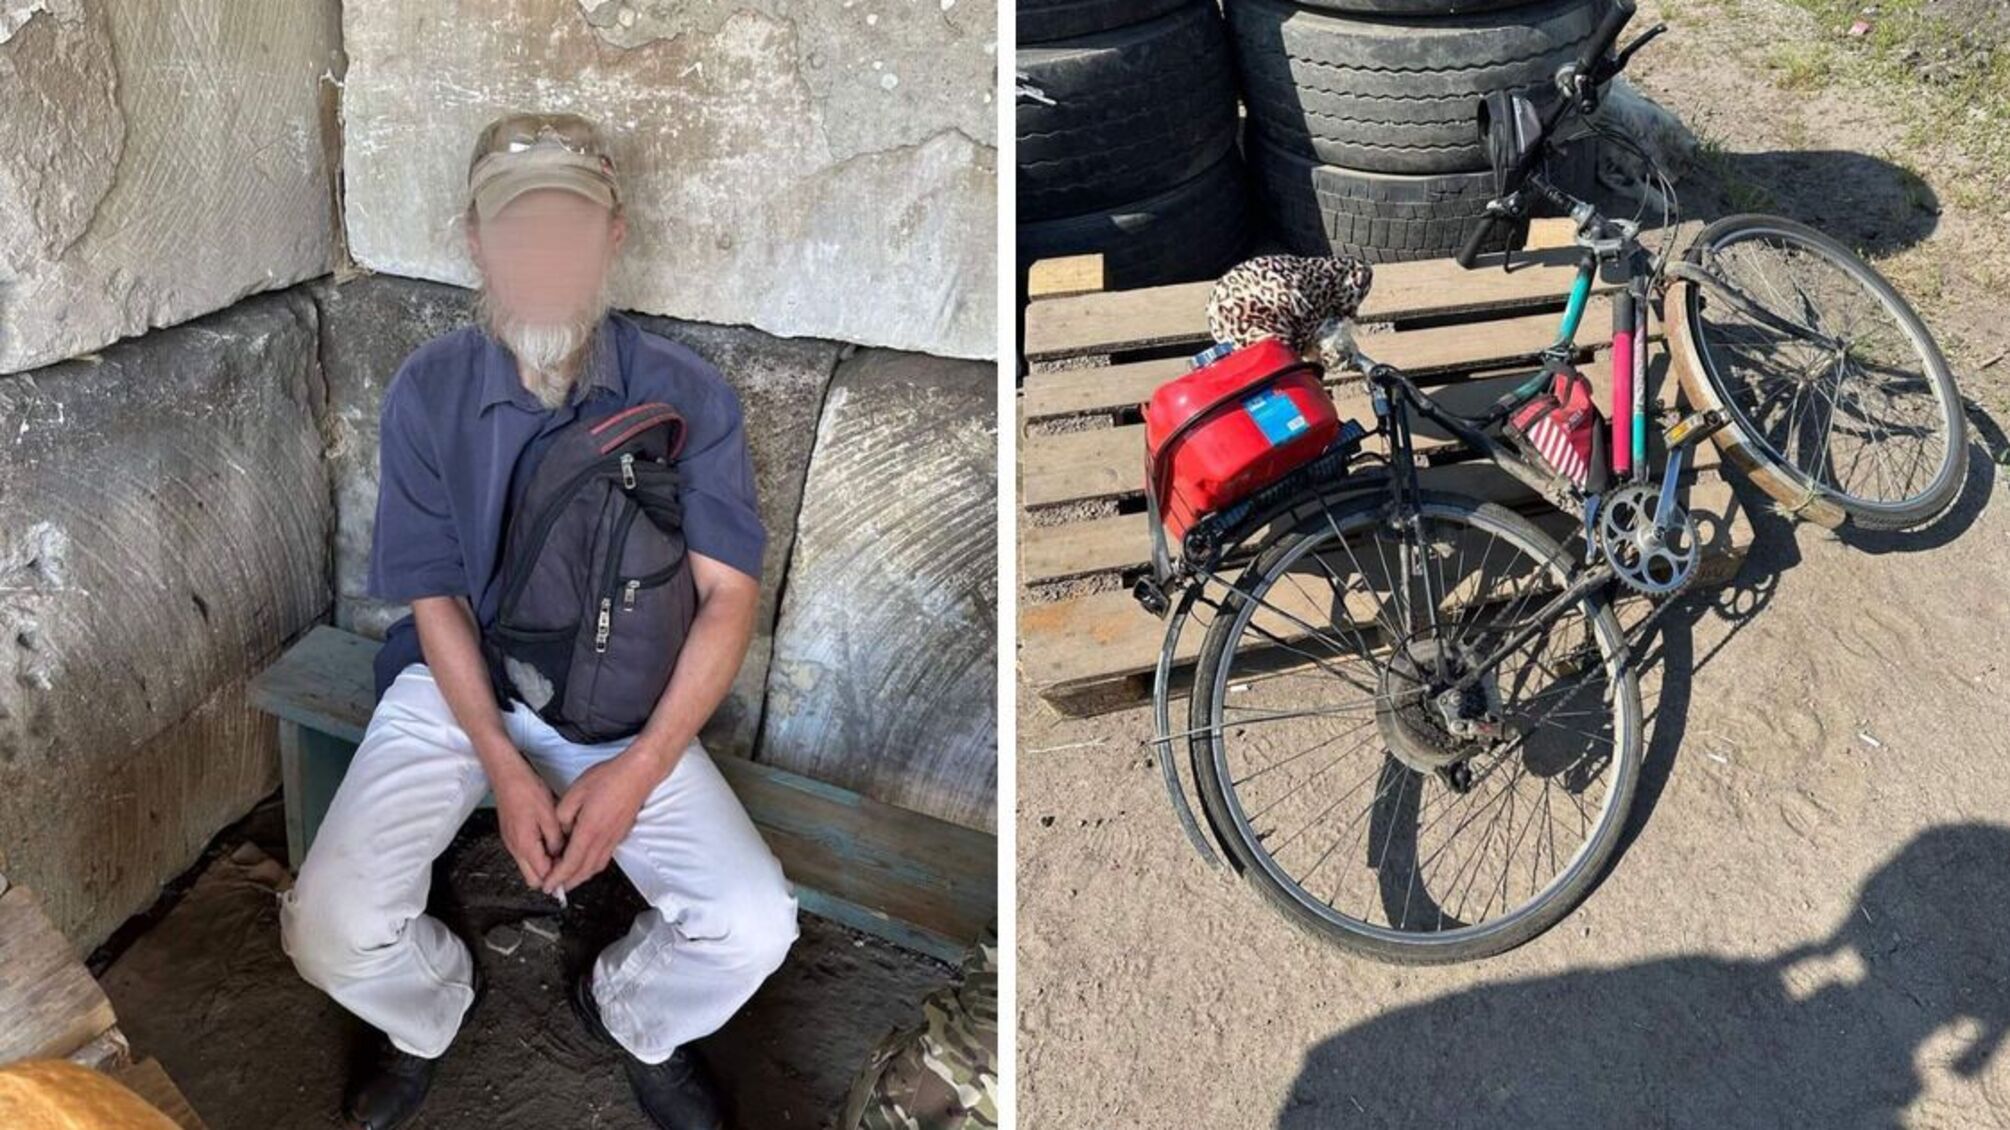 'Агент на колесах': на Херсонщині прикордонники упіймали велосипедиста, який 'зливав' рф позиції ЗСУ